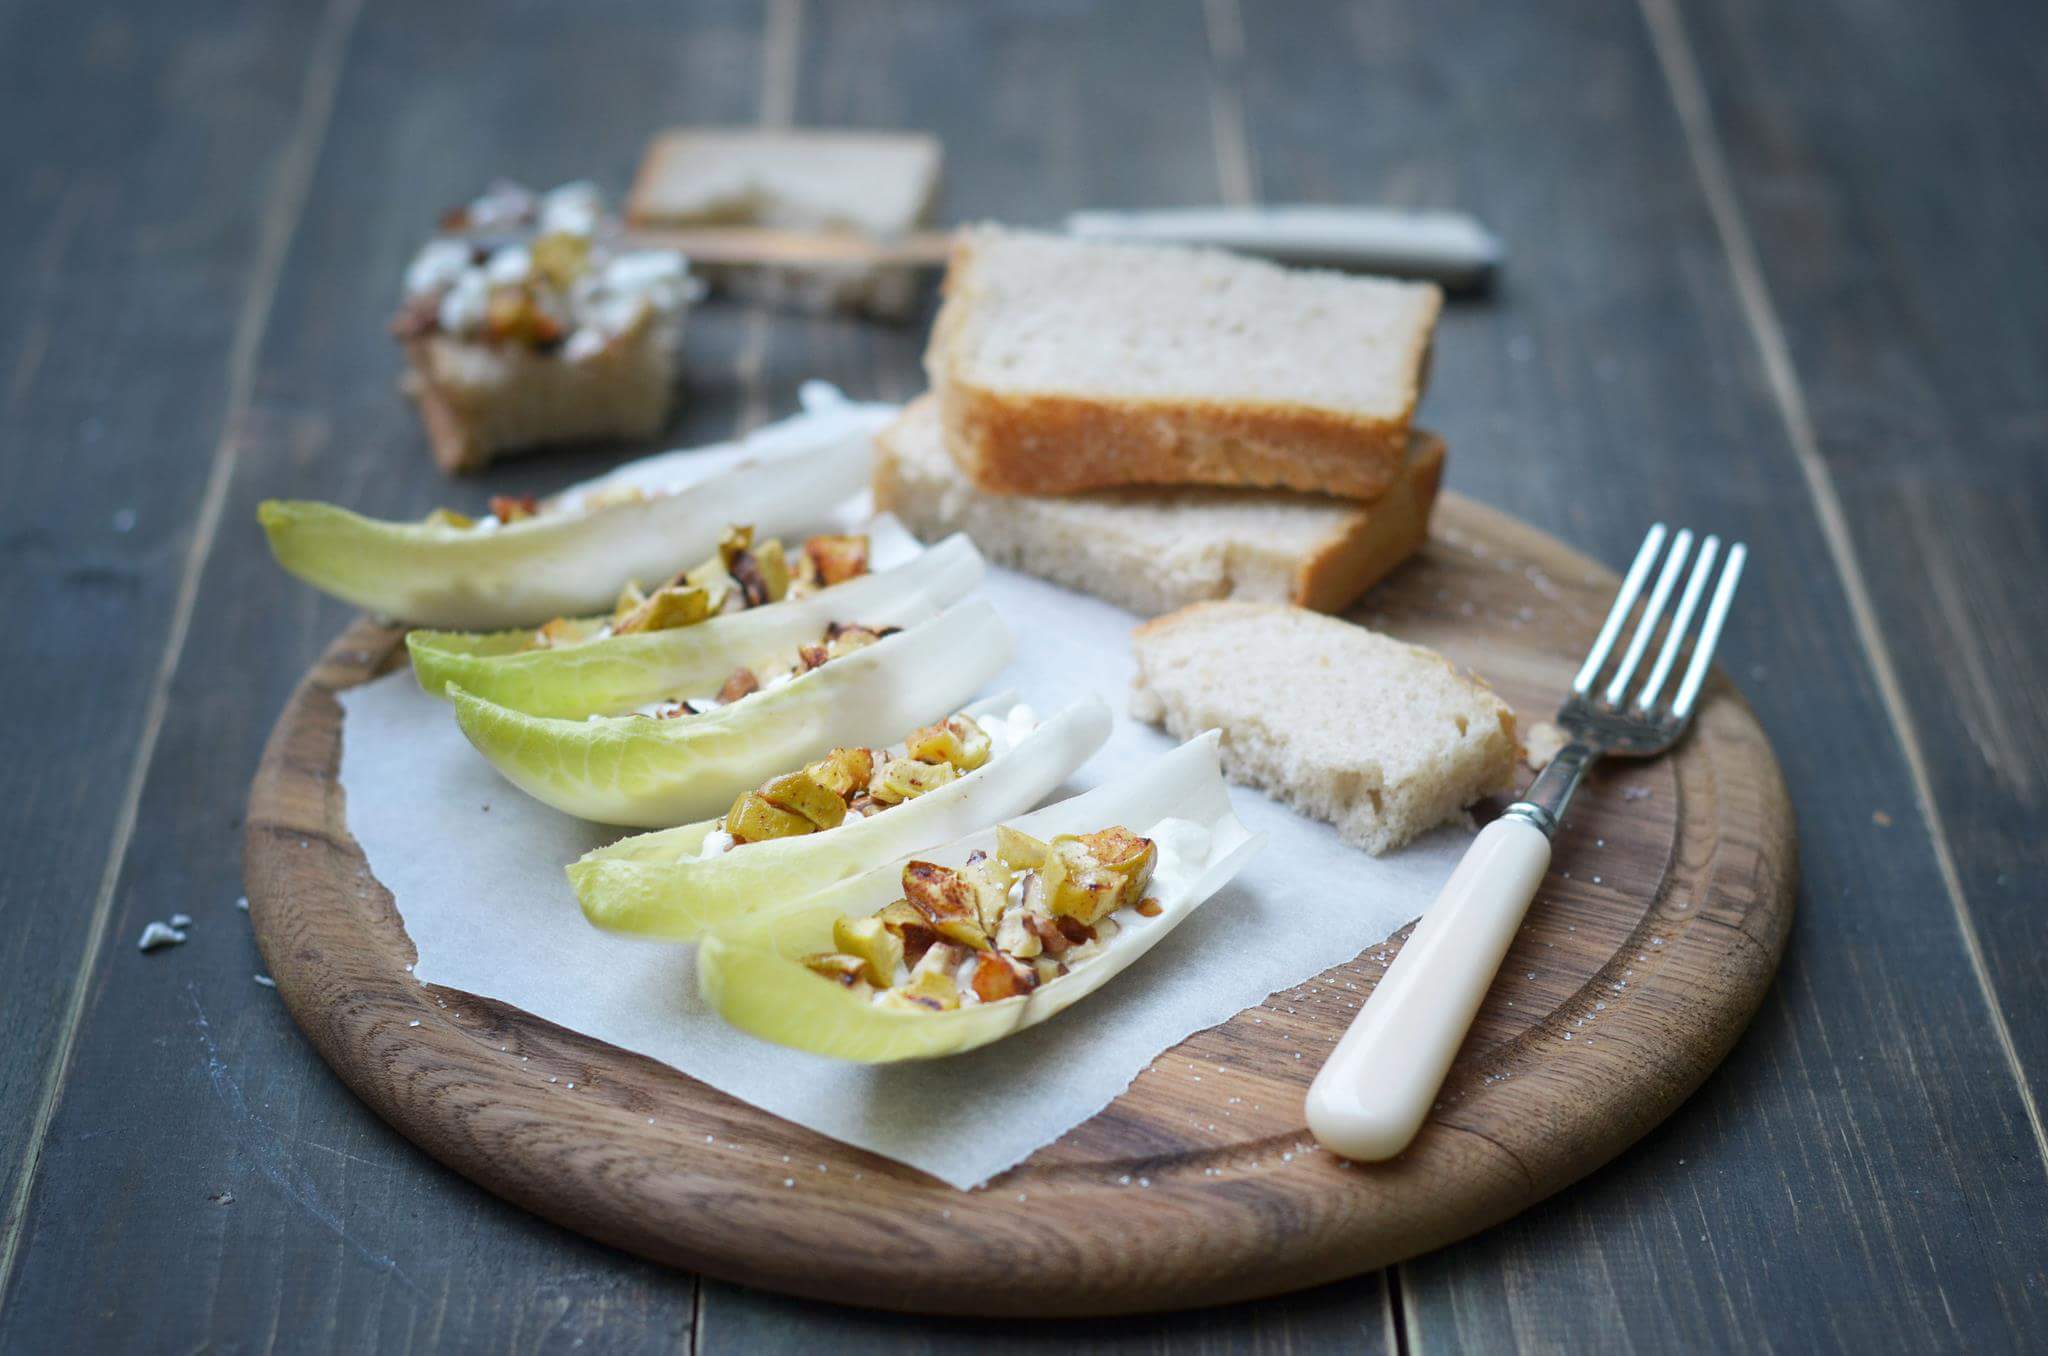 Салат из яблока, грецкого ореха и зернистого творога в листьях цикория